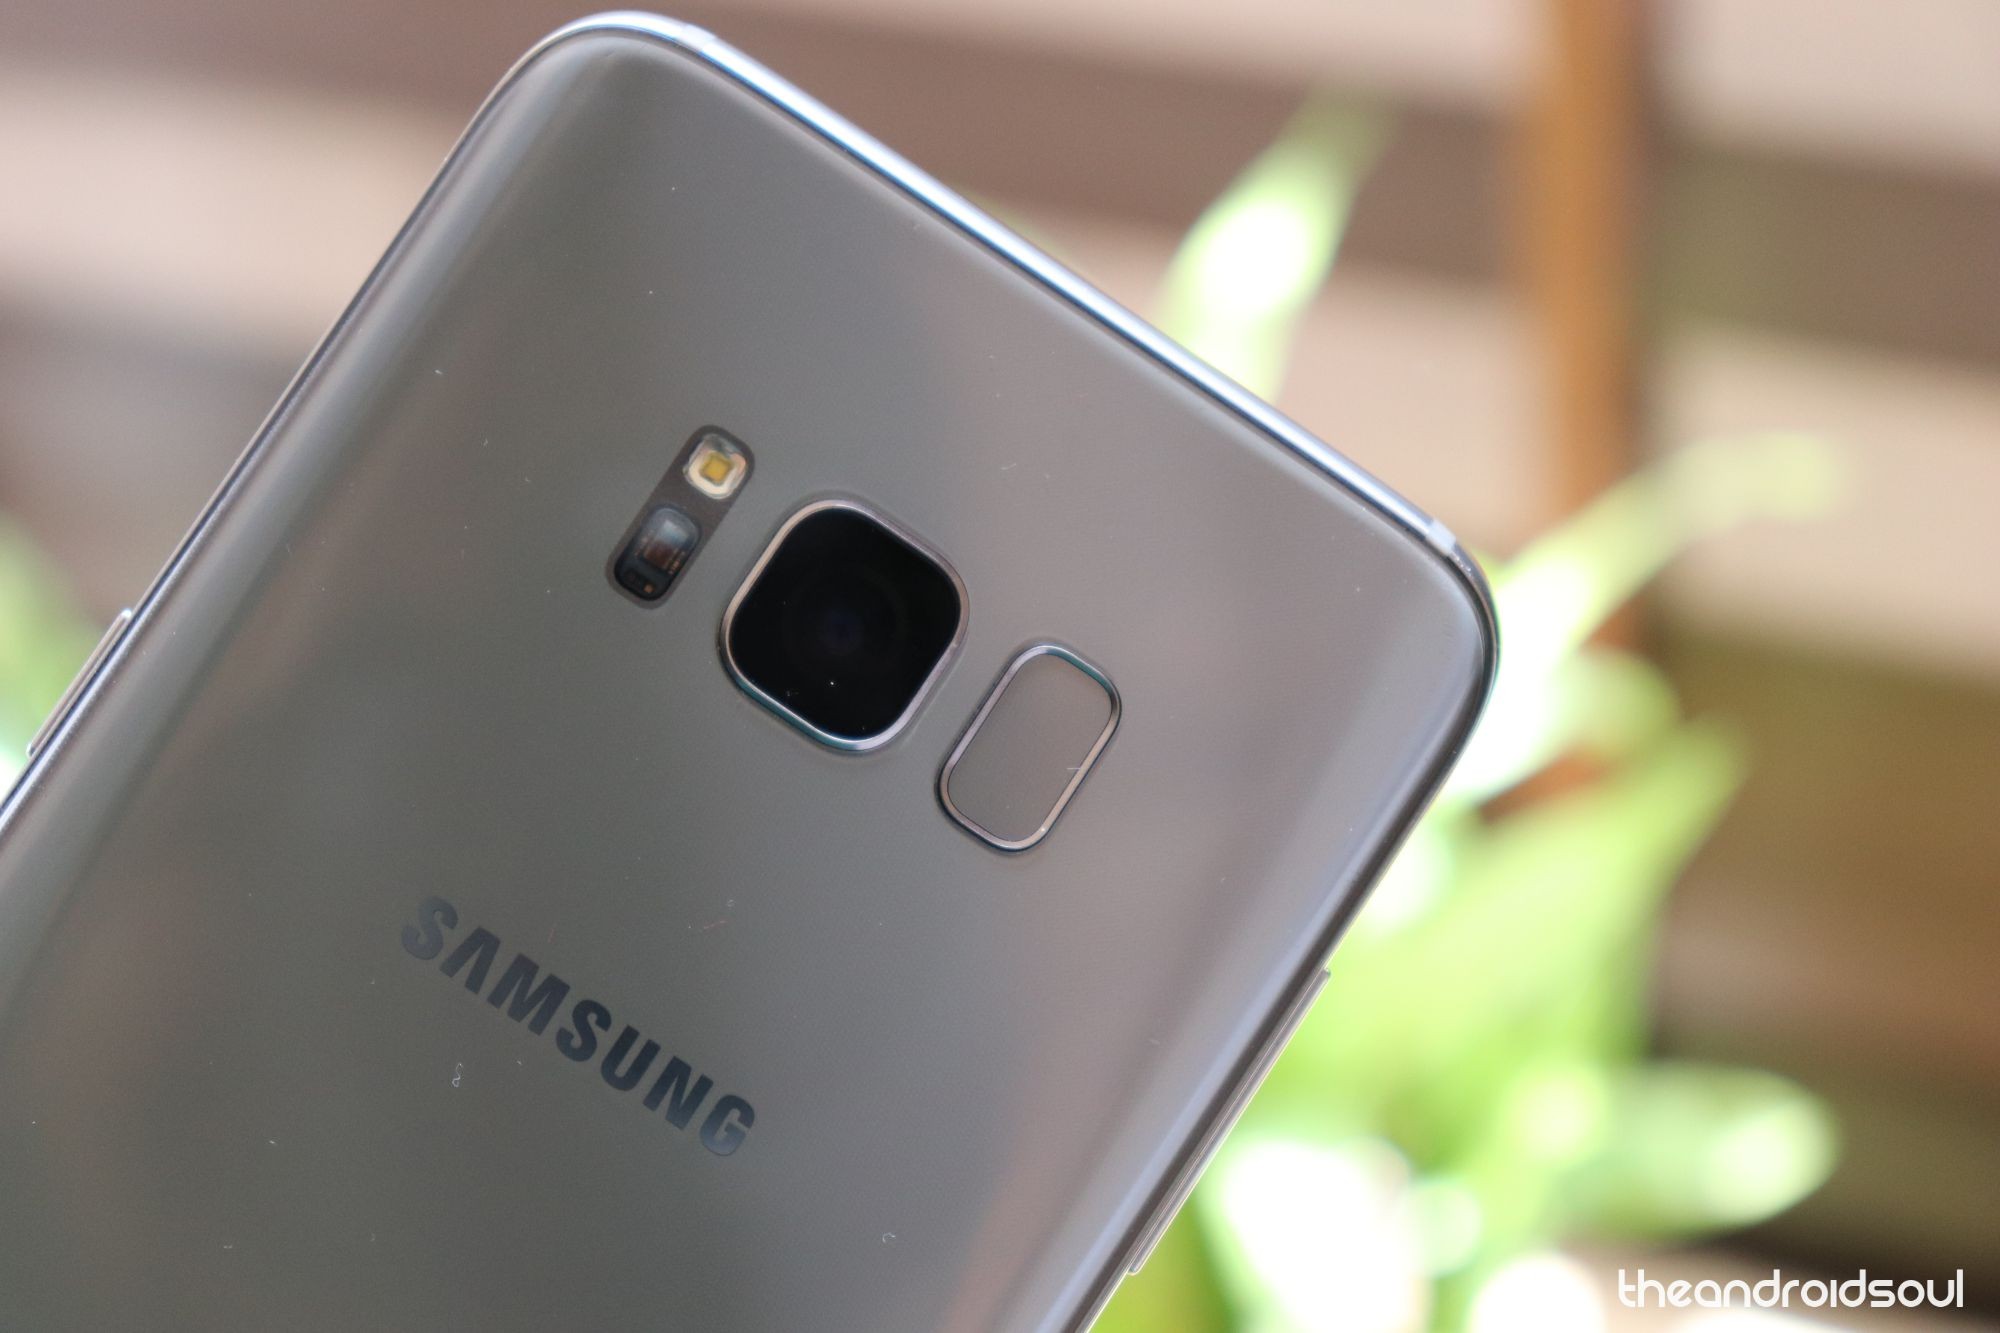 Samsung Galaxy S8 update news